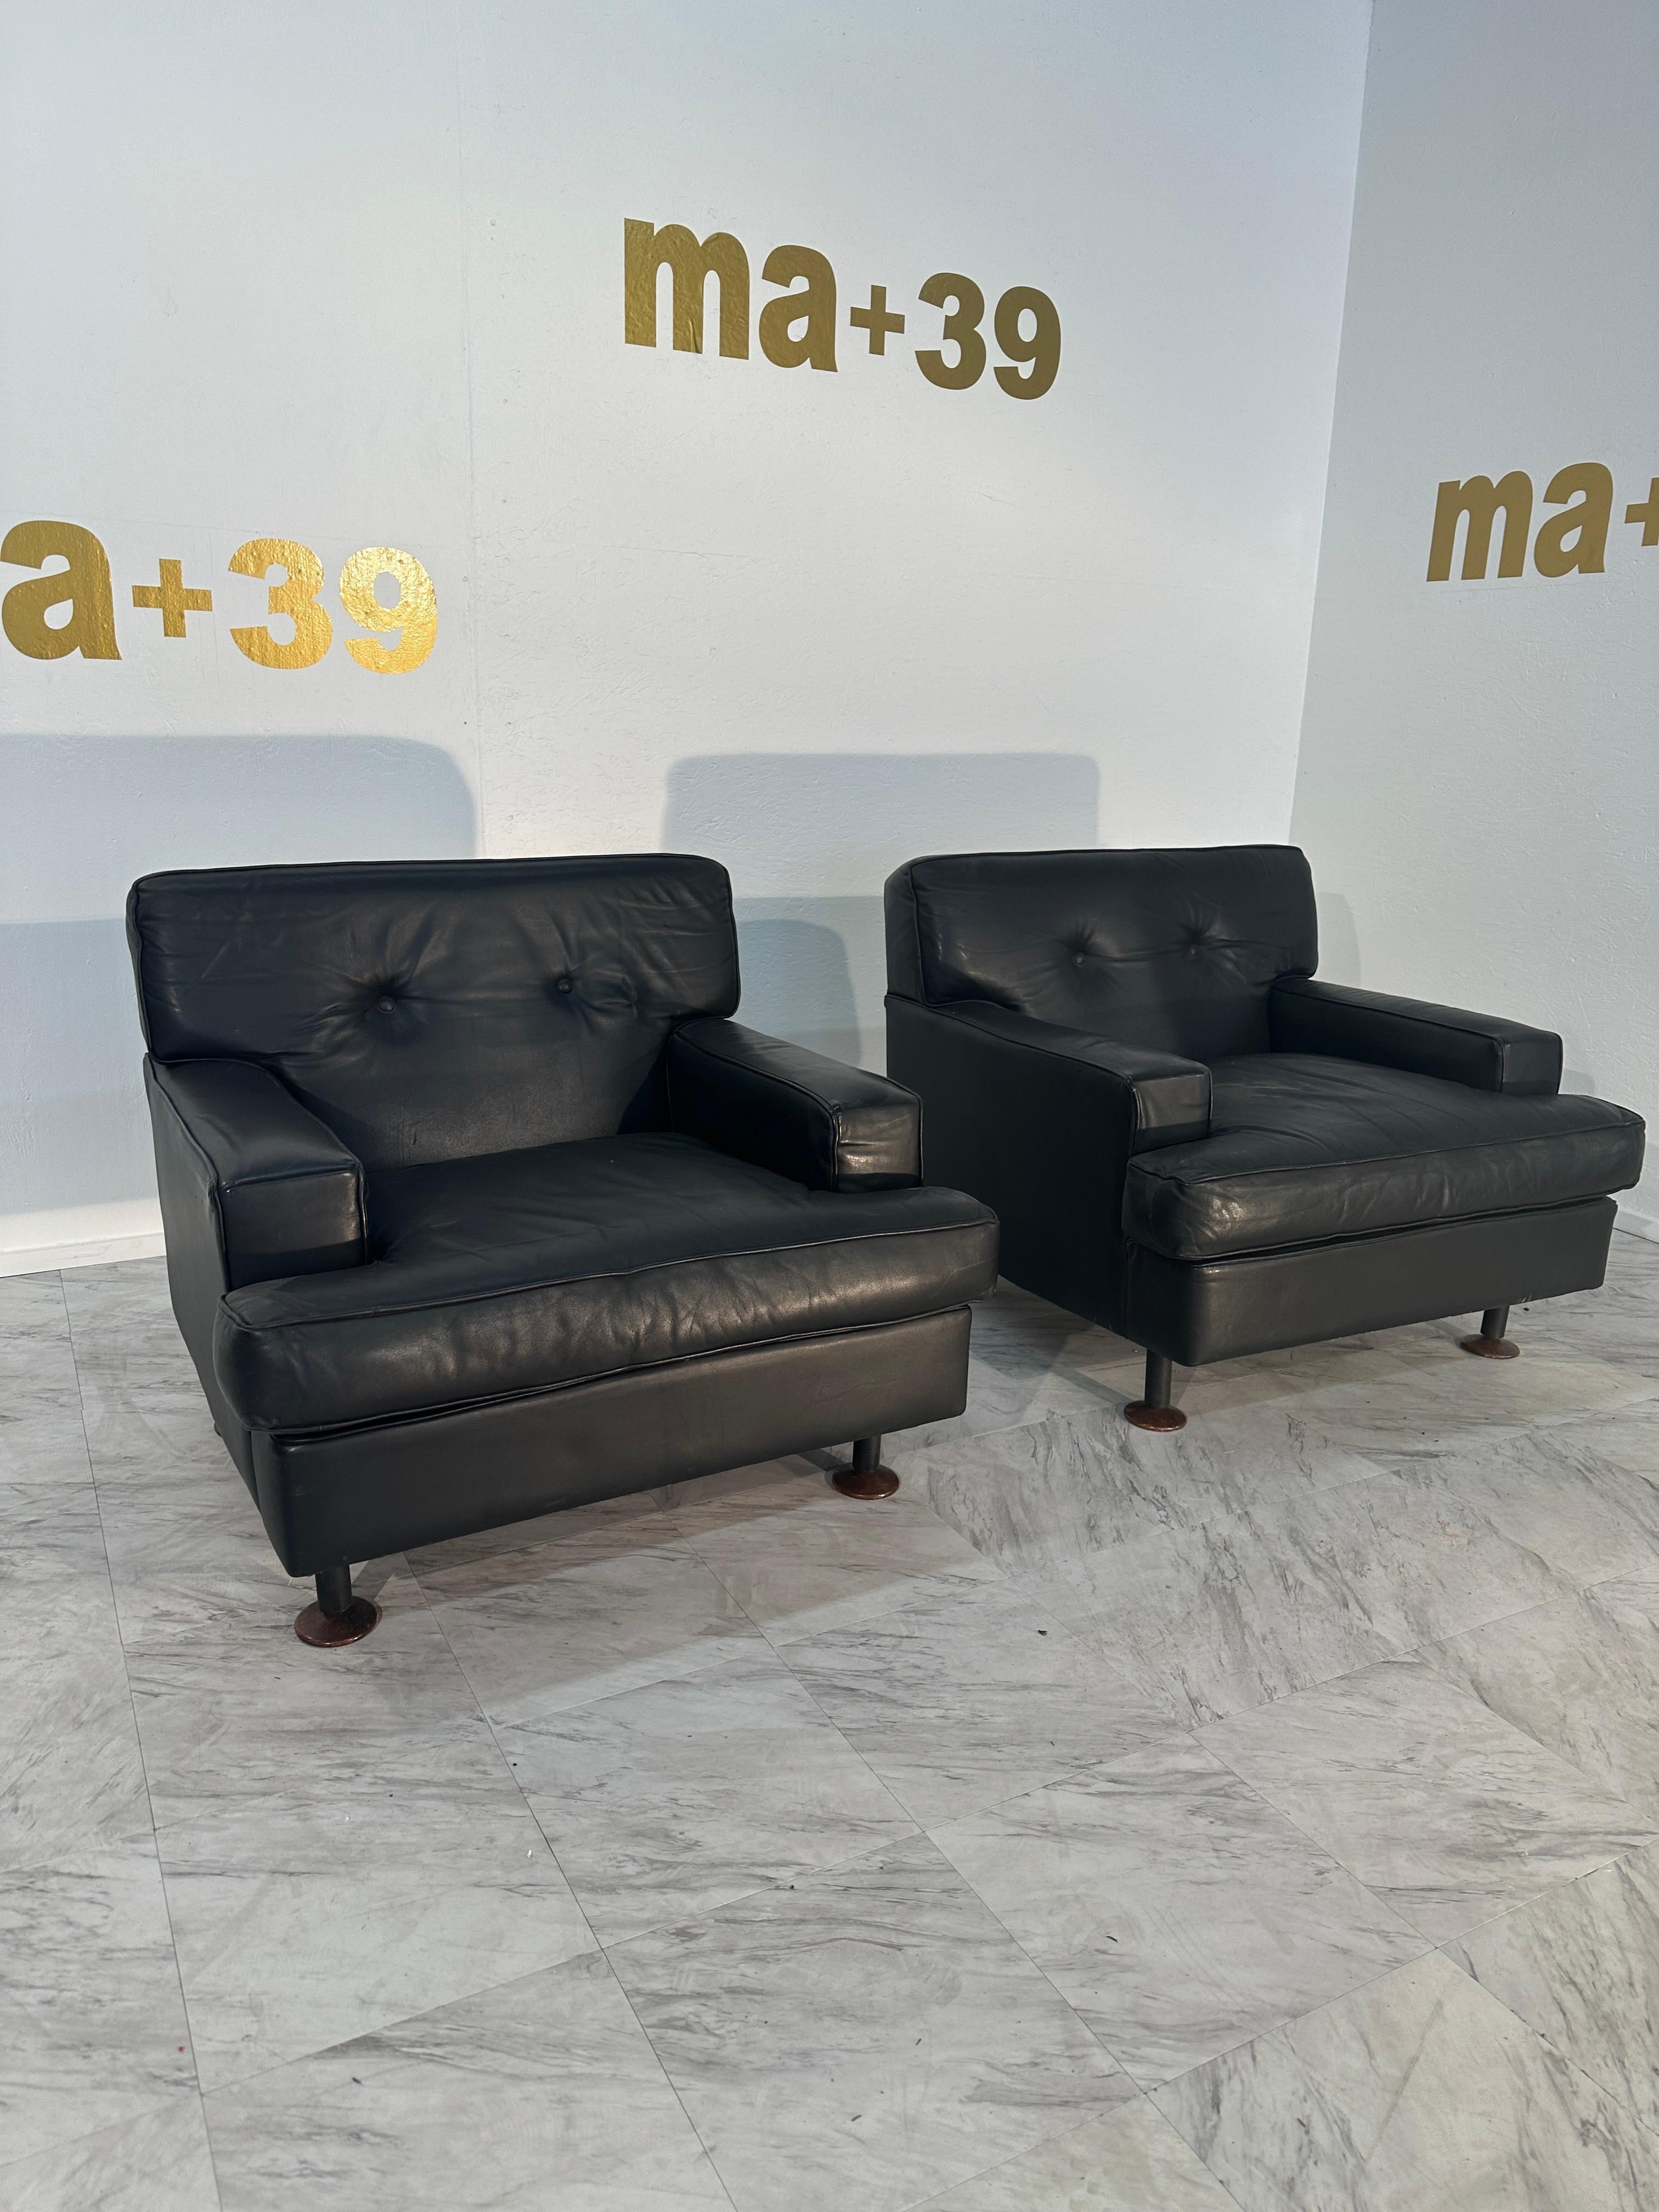 La paire de 2 chaises longues italiennes du milieu du siècle de Zanuso X Artflex, datant des années 1960, sont des pièces de mobilier exceptionnelles. Fabriquées avec un design caractéristique du milieu du siècle, ces chaises de salon présentent des